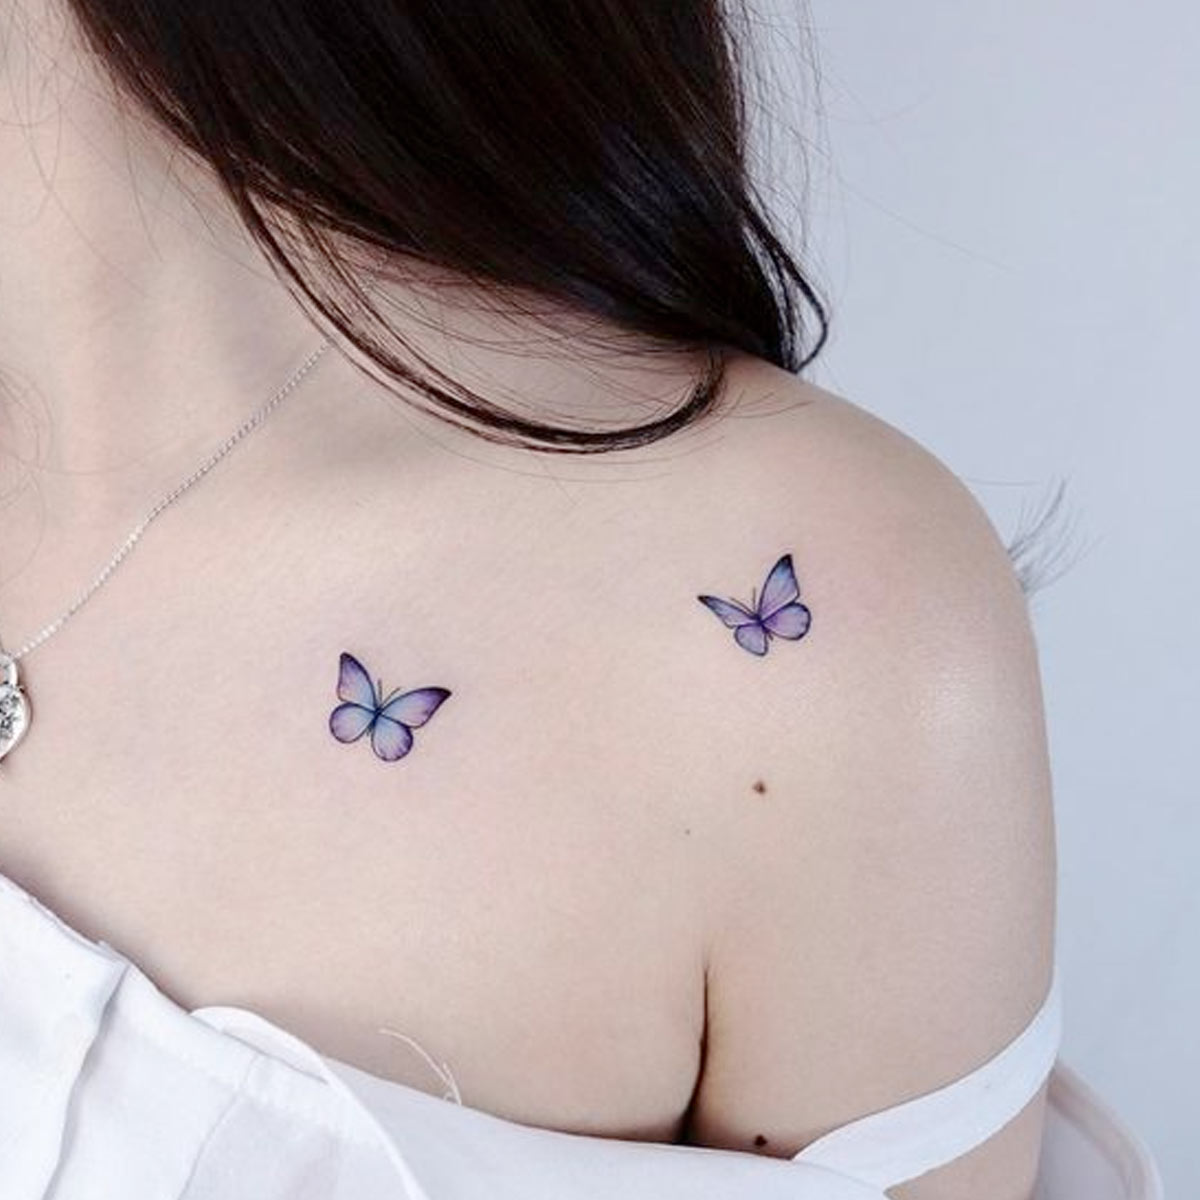 Tattoo farfalla blu e azzurra